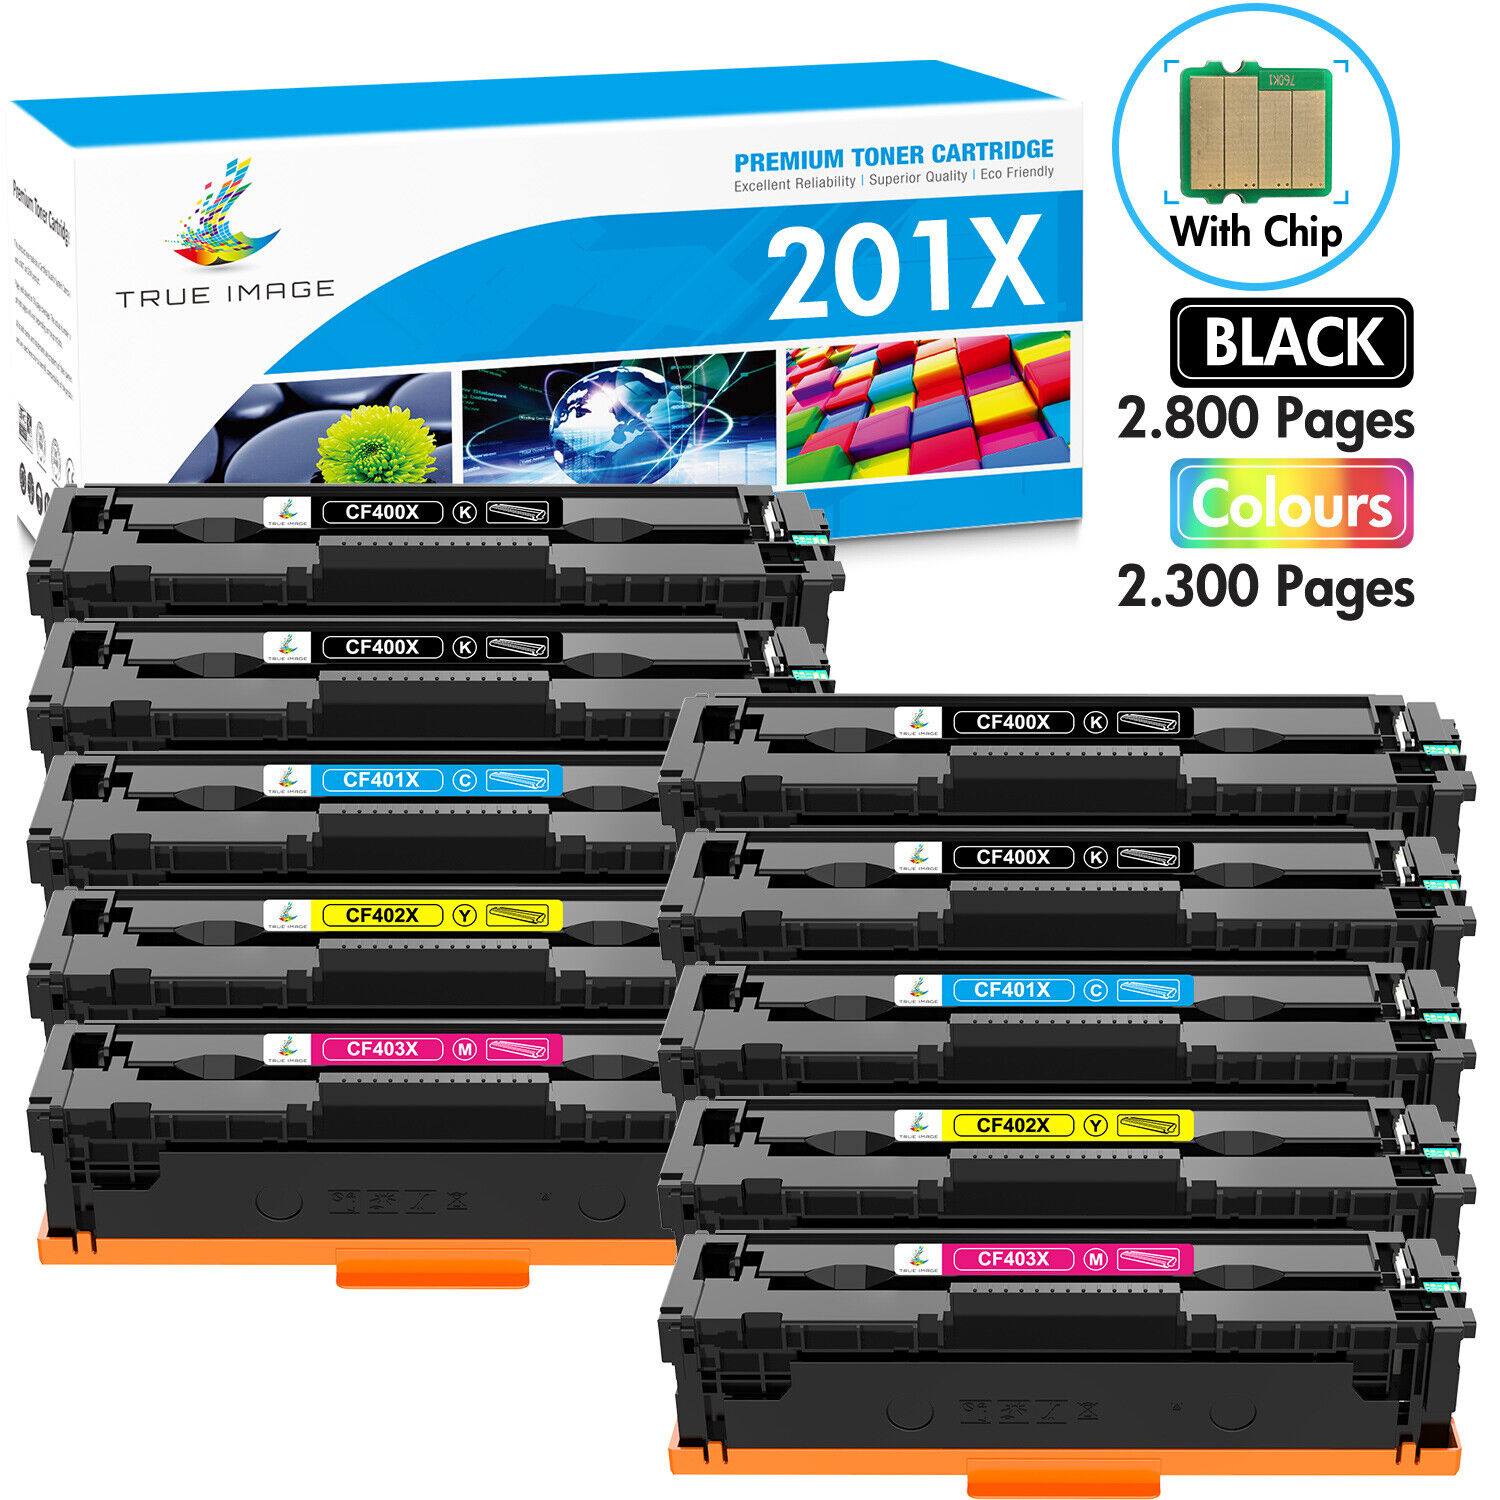 10PK Black Toner for HP 201X CF400X LaserJet Pro MFP M277dw M252 M252dw M277c6